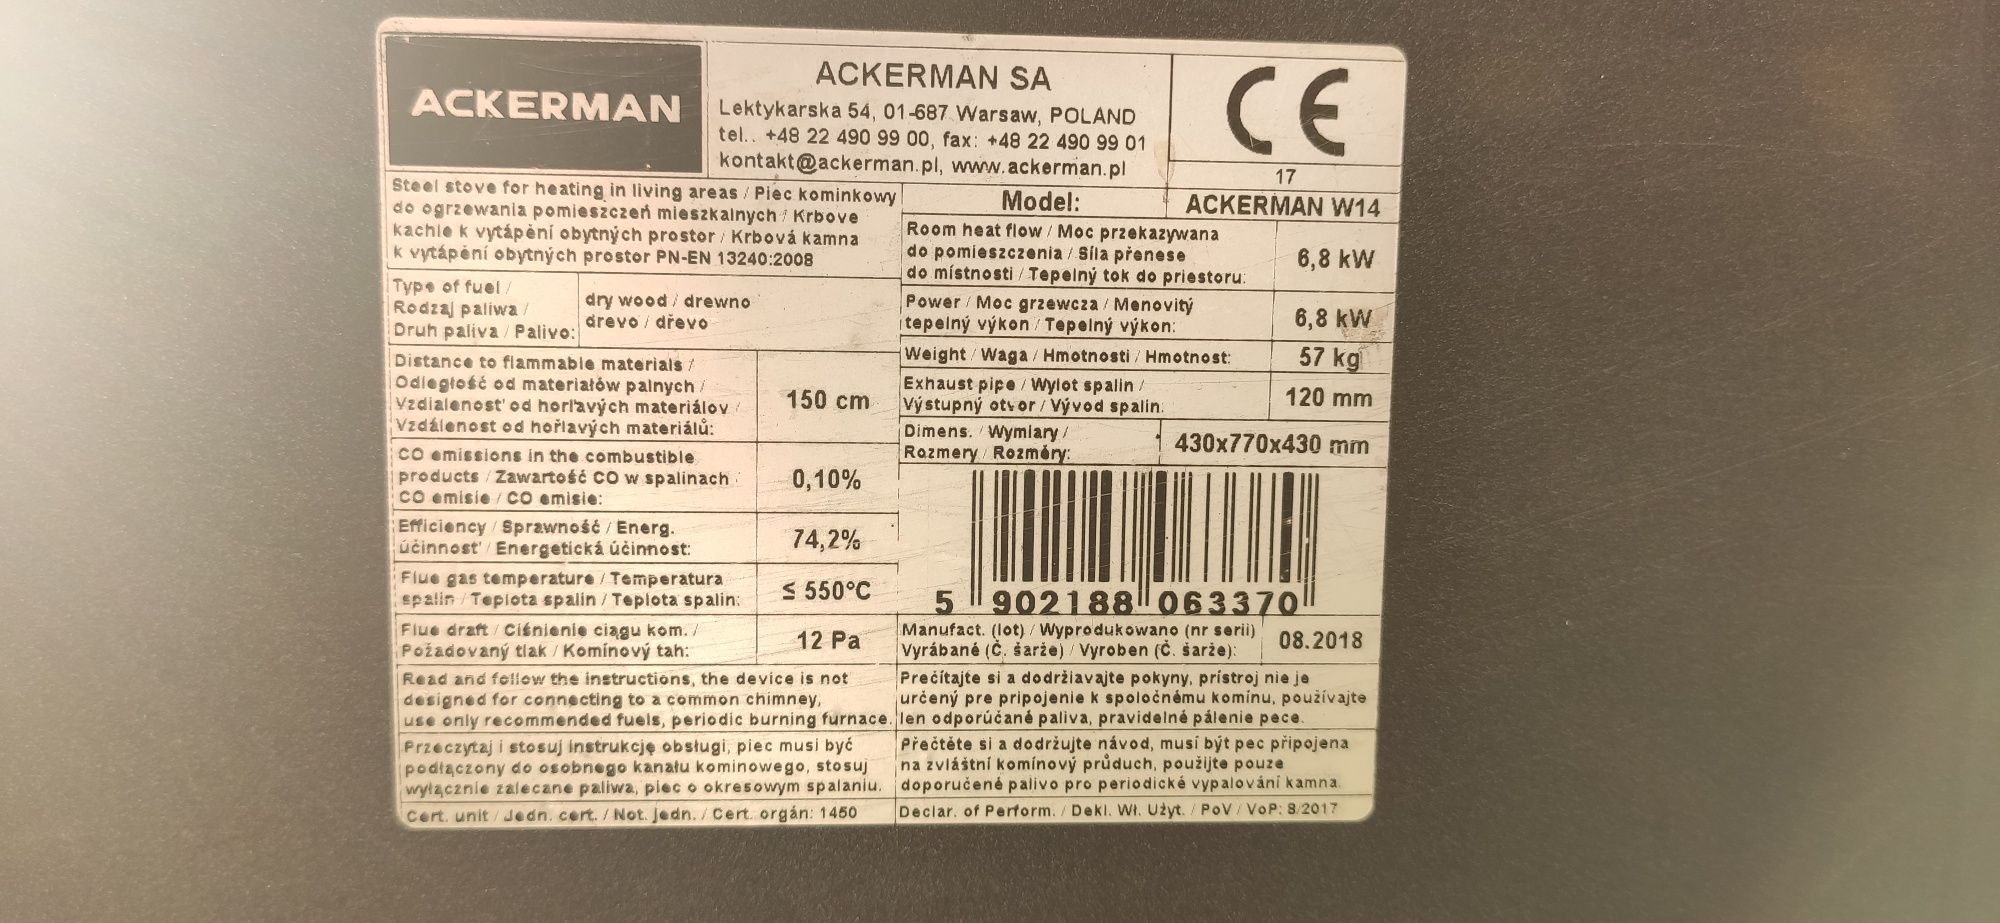 Piec kominkowy stalowy Ackerman W14 6.8kW